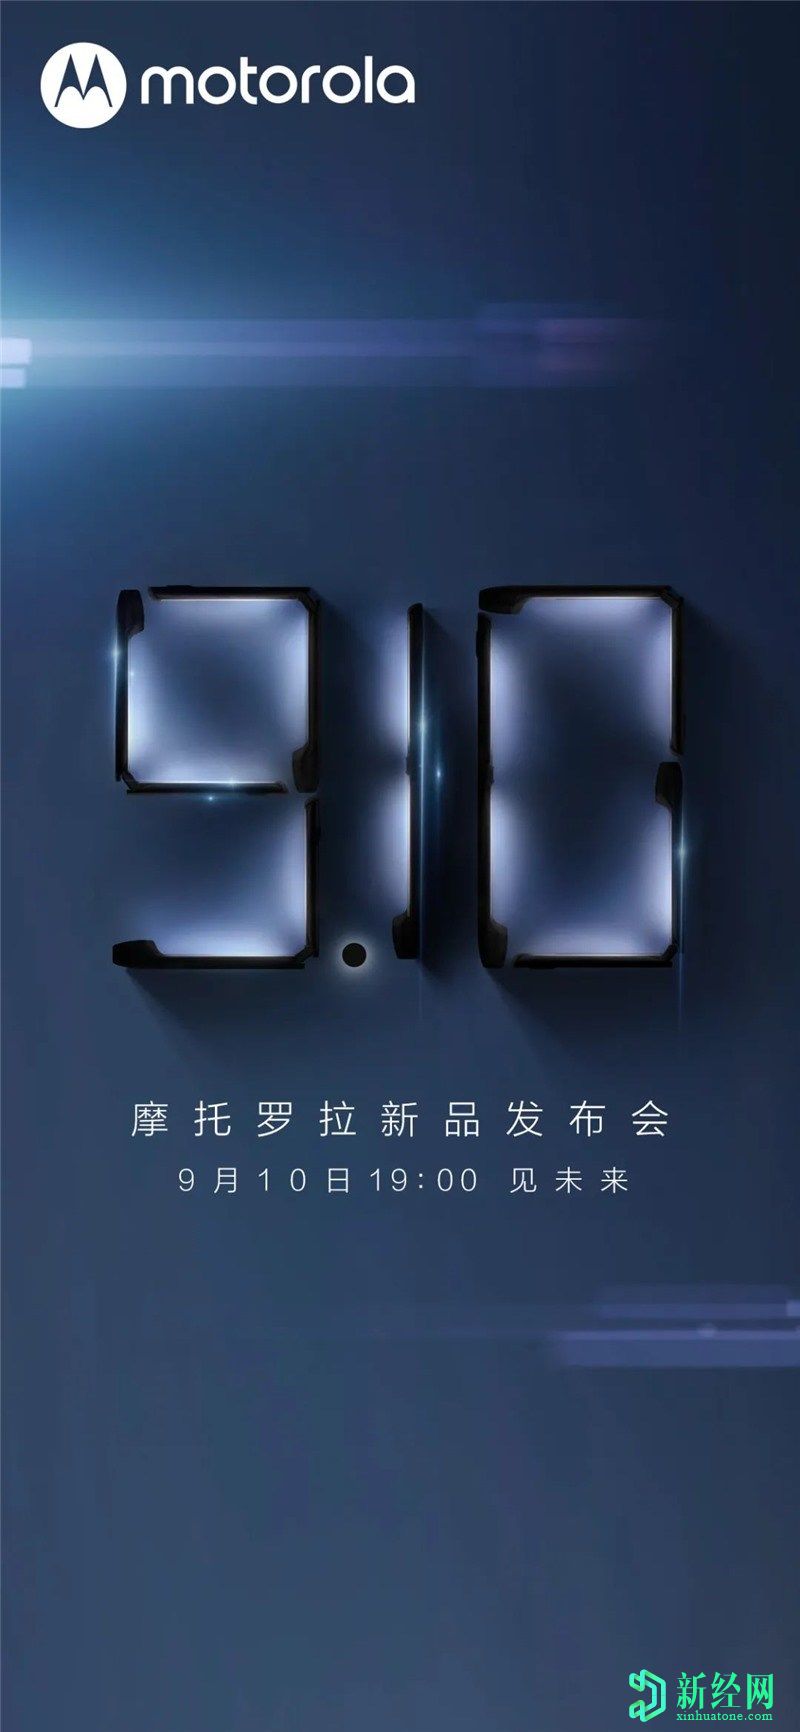 摩托罗拉Moto Razr 5G可折叠智能手机获选于9月10日在中国推出